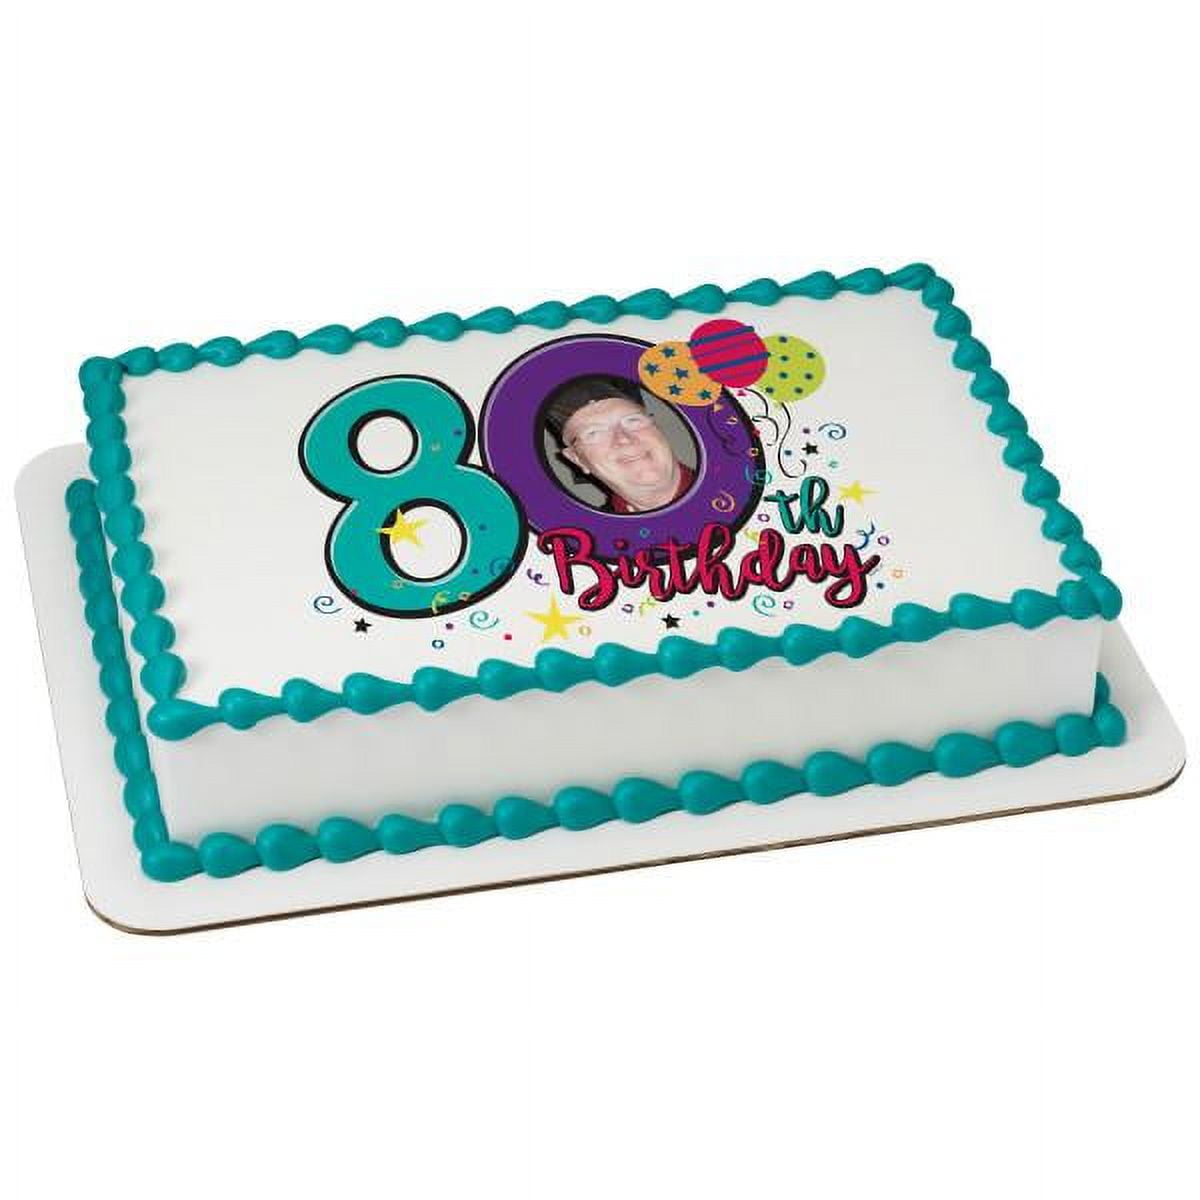 80th Birthday Cakes | 25+ Fabulous Birthday Cake Ideas for Men & Women